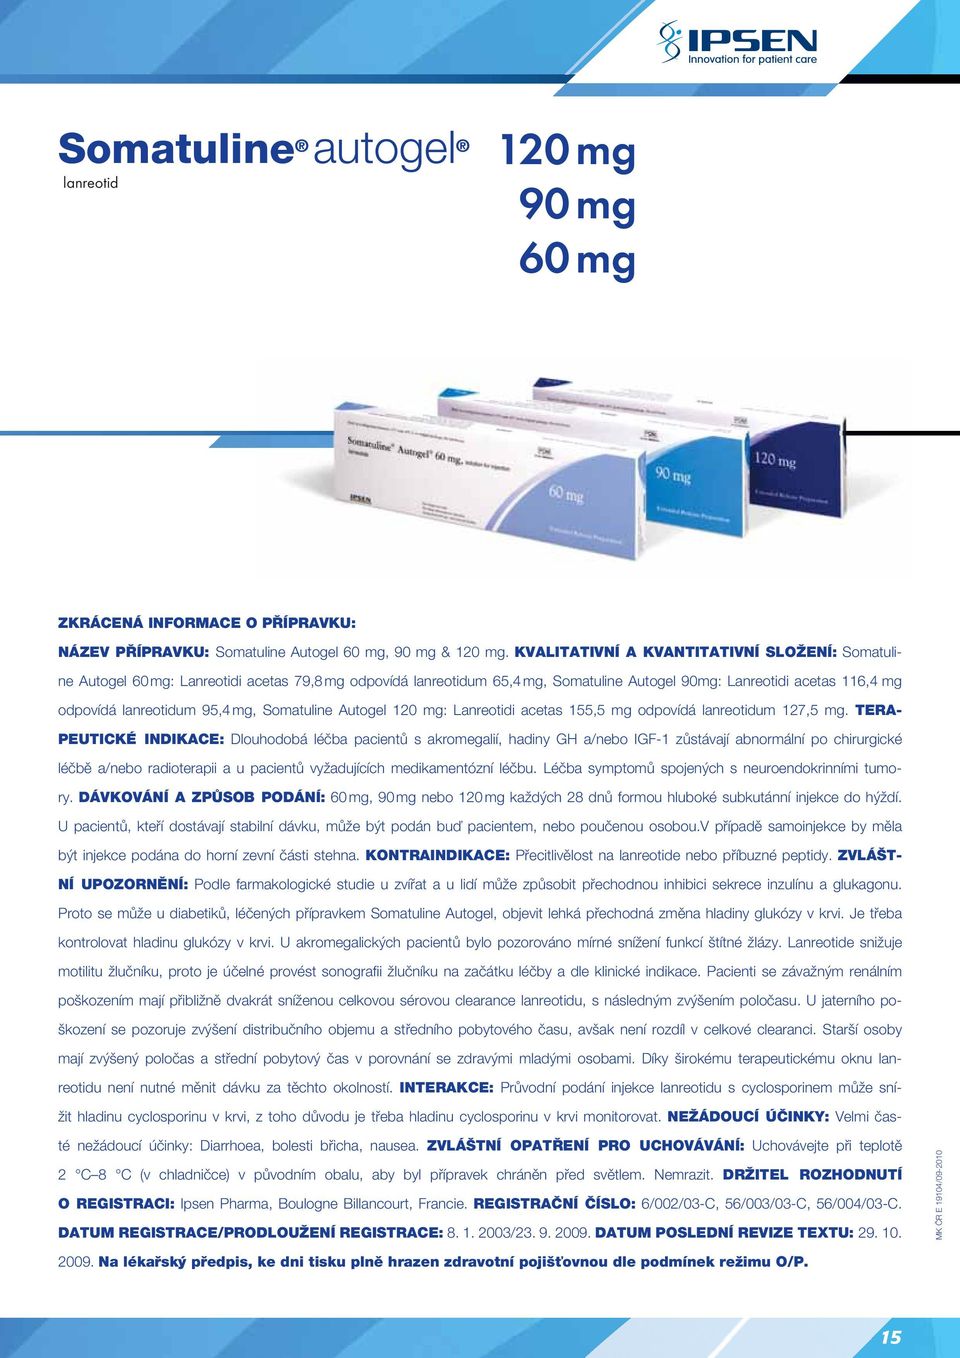 mg, Somatuline Autogel 120 mg: Lanreotidi acetas 155,5 mg odpovídá lanreotidum 127,5 mg.